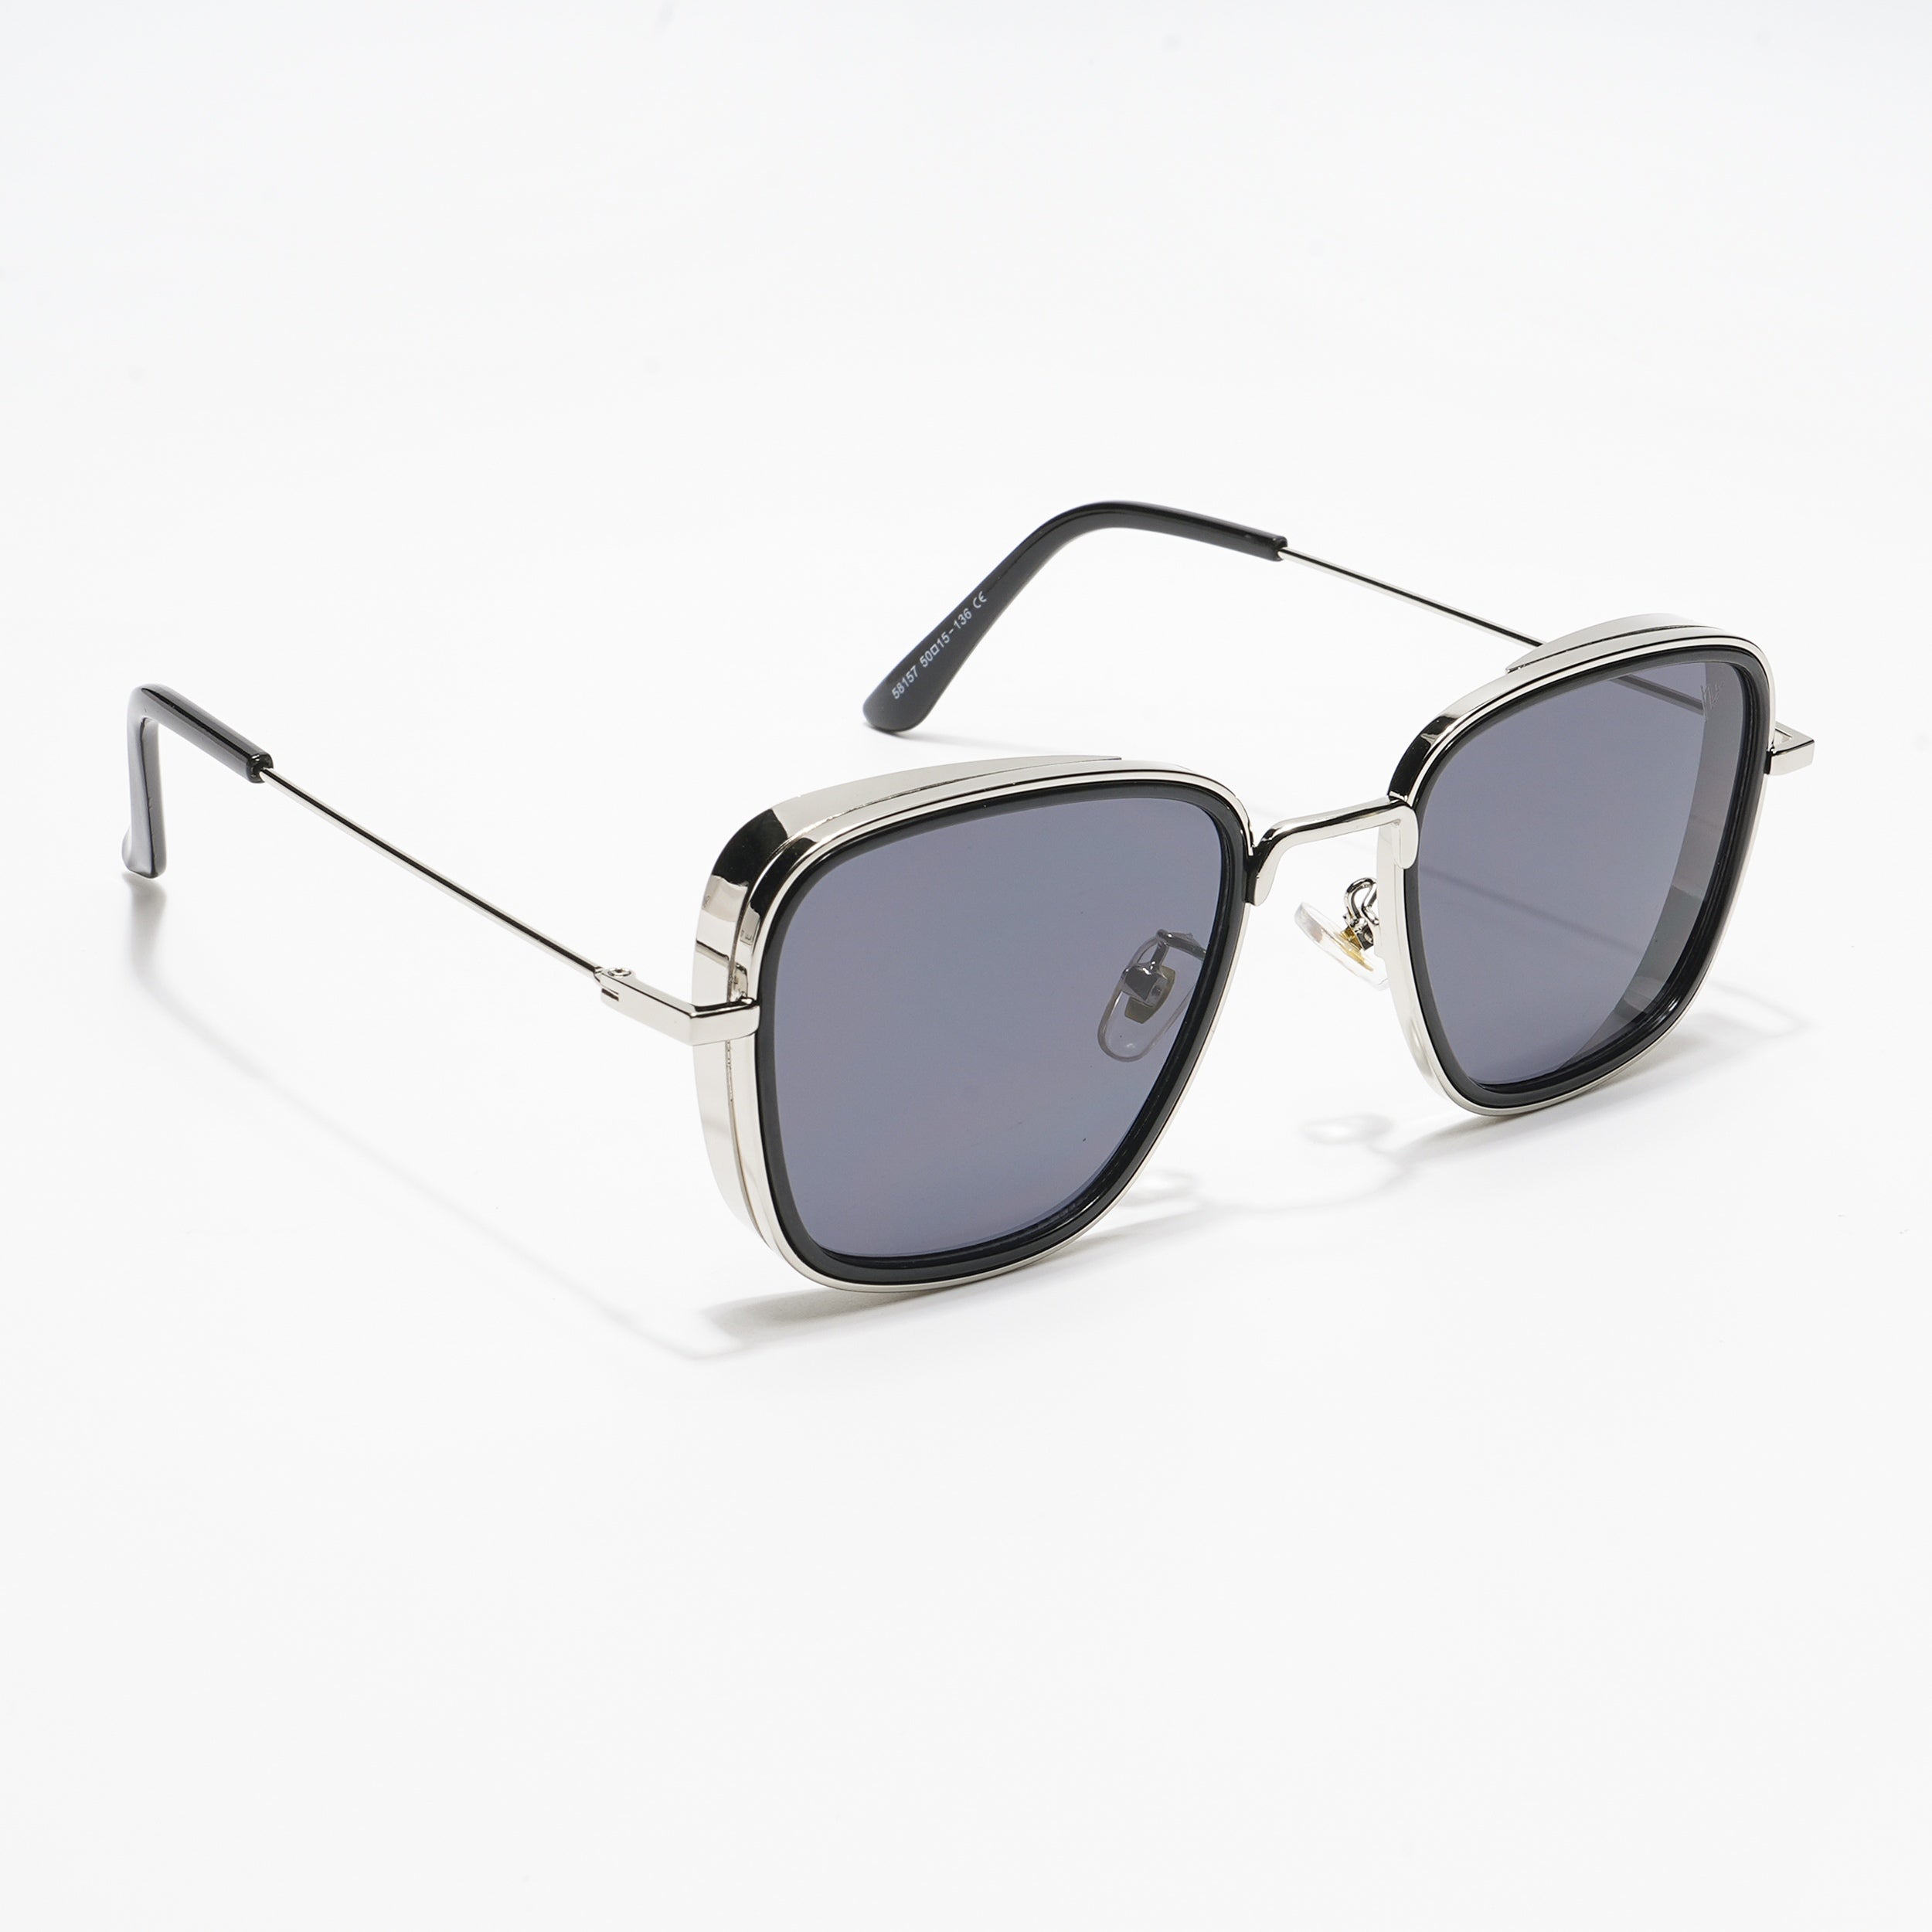 Voyage Black-Silver Retro Square Sunglasses MG2970